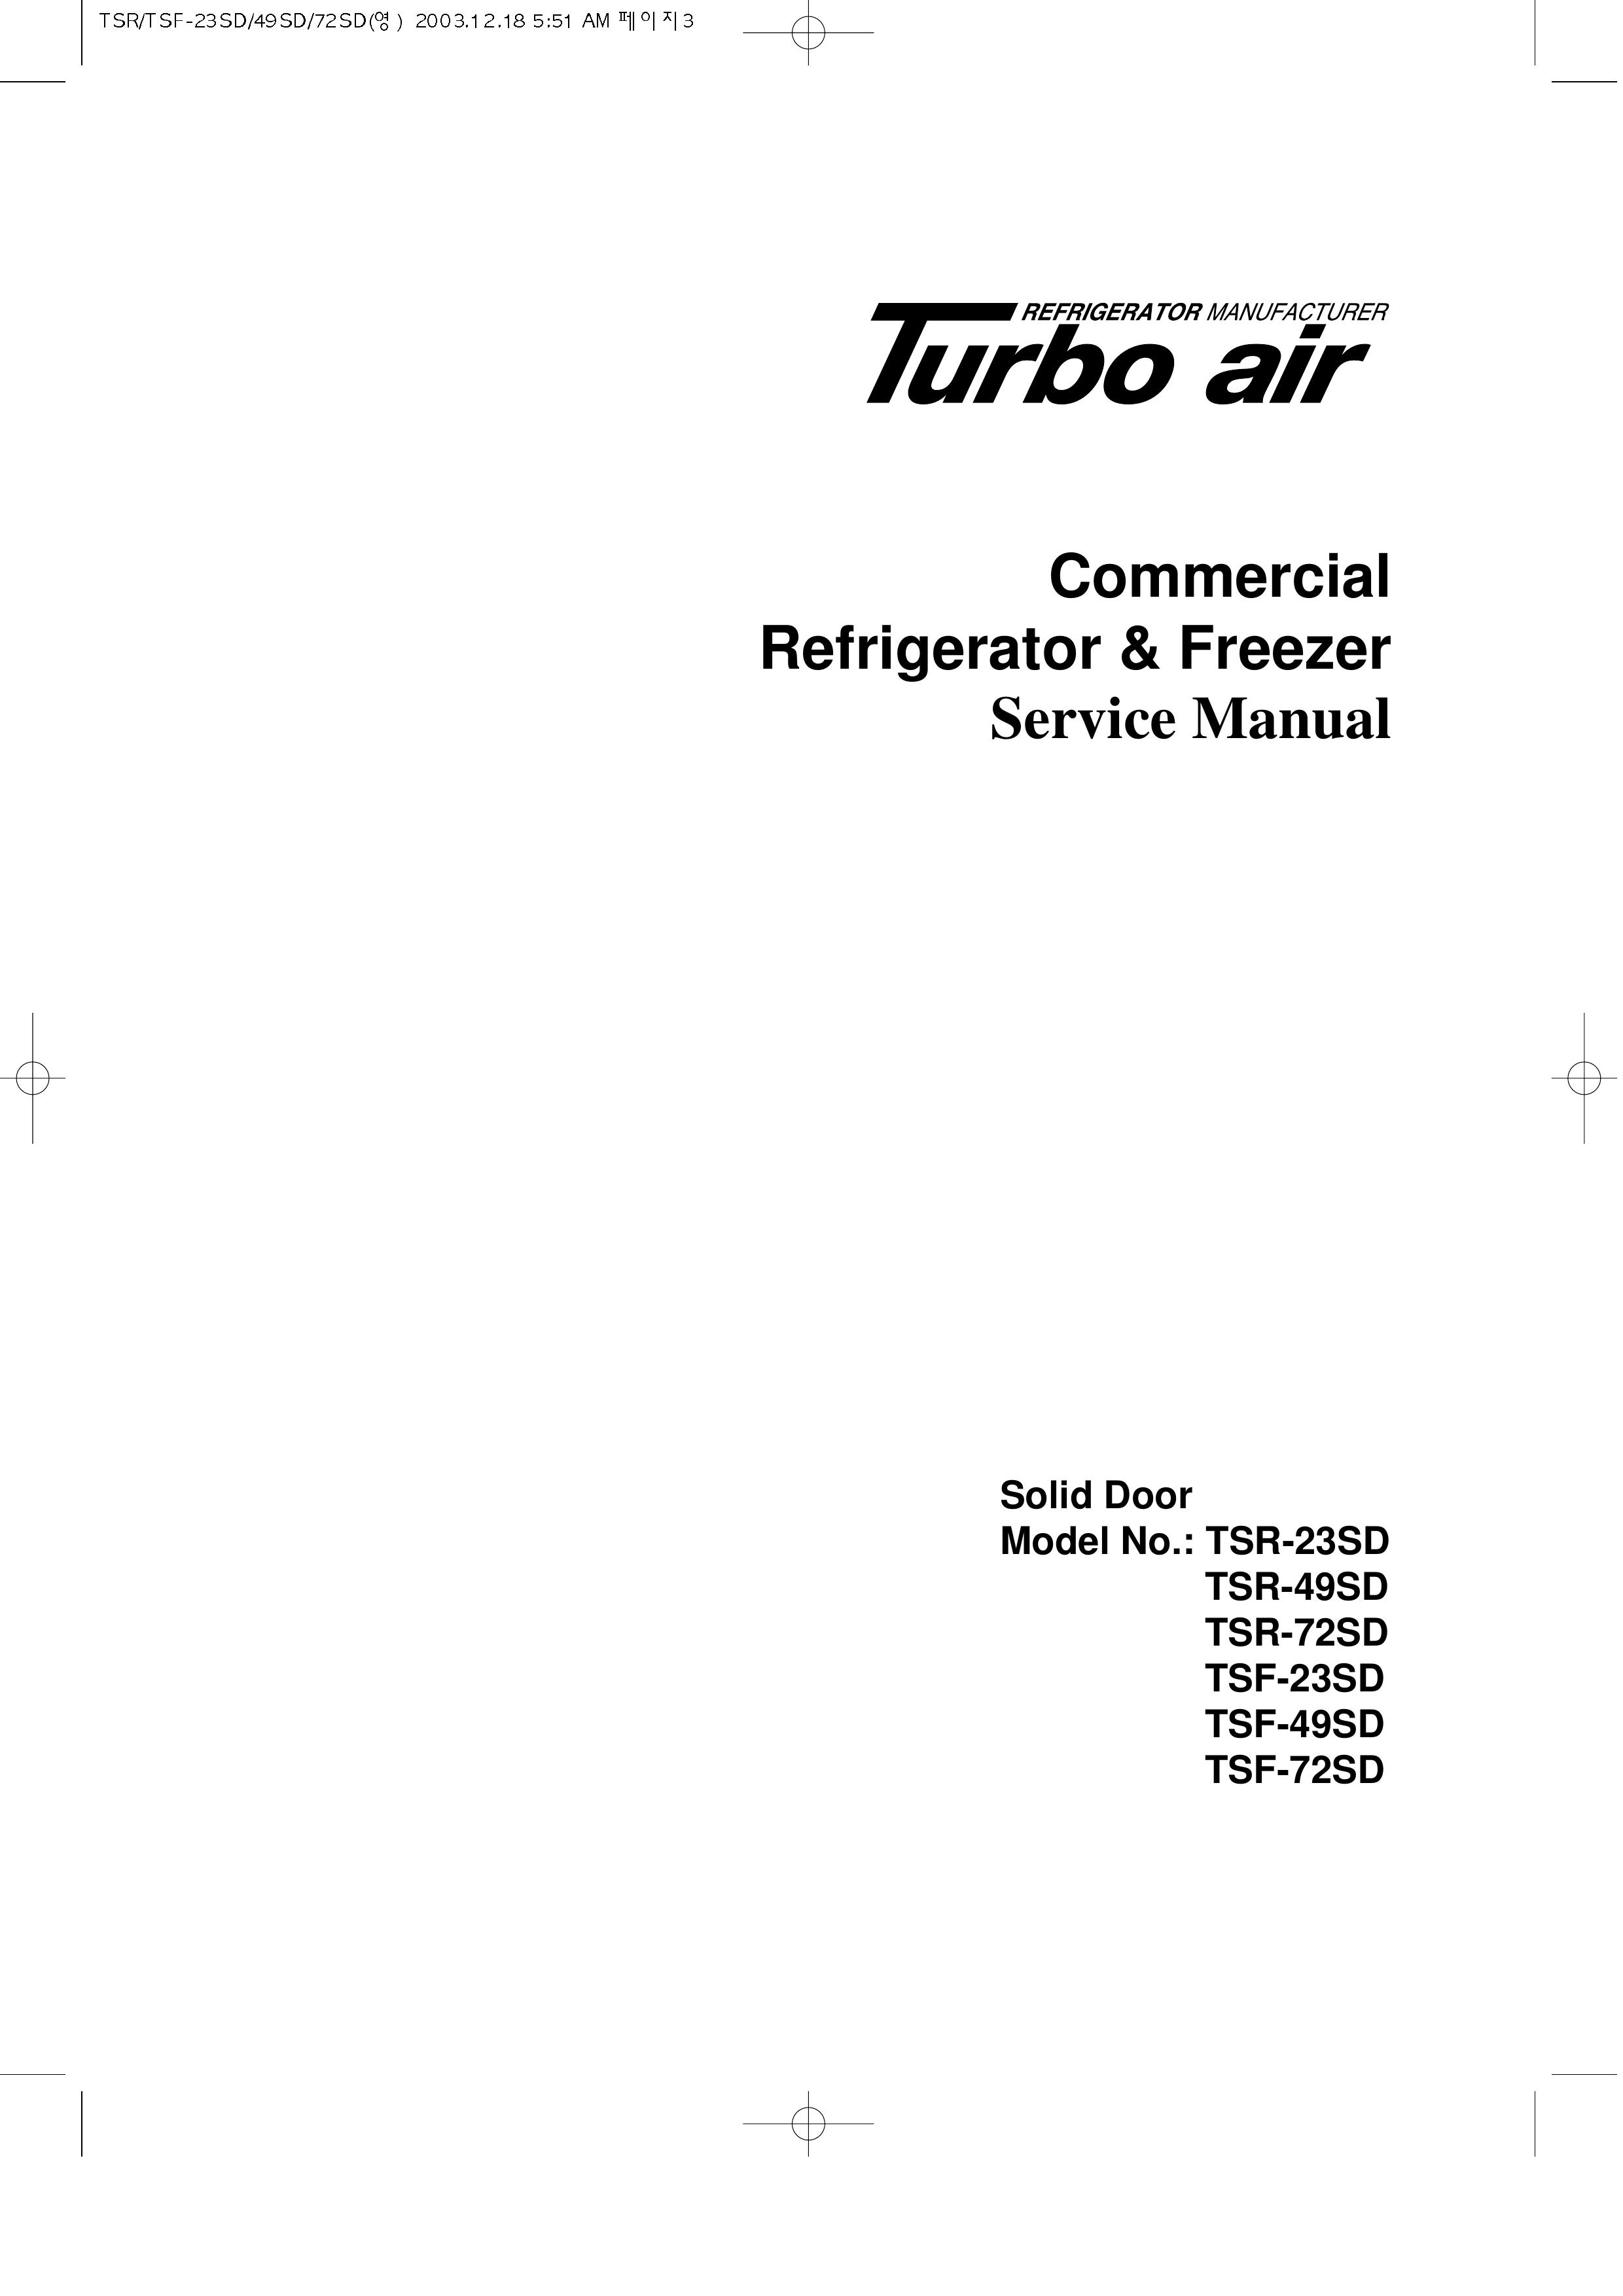 Turbo Air TSR-49SD Refrigerator User Manual